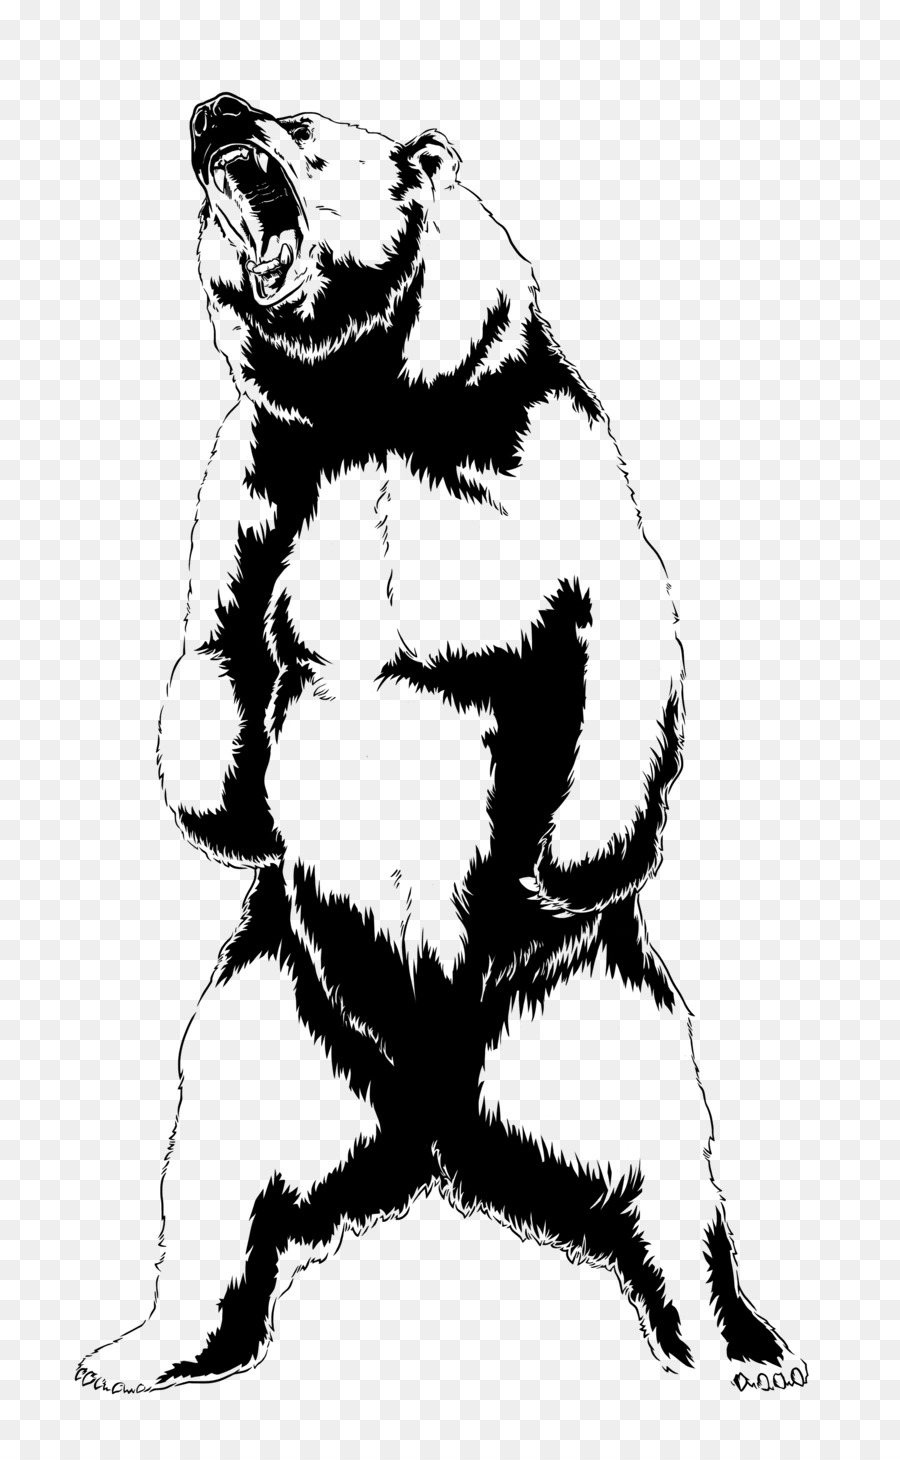 Bear Roar Drawing Art - roar png download - 1920*3086 - Free Transparent Bear png Download.